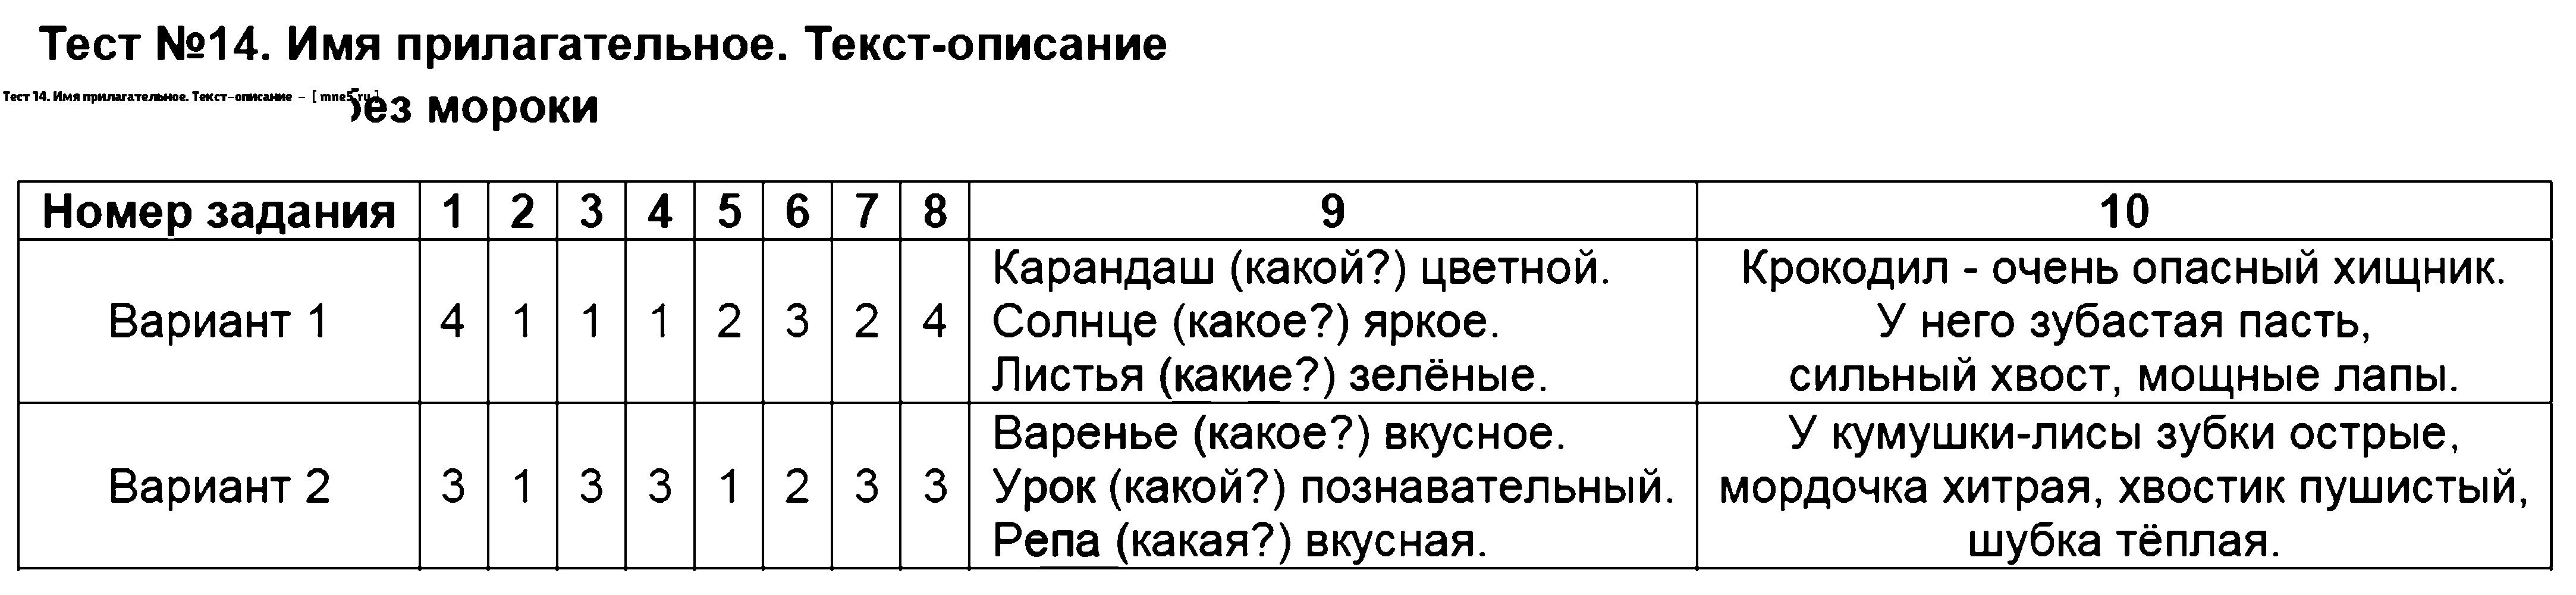 ГДЗ Русский язык 2 класс - Тест 14. Имя прилагательное. Текст-описание